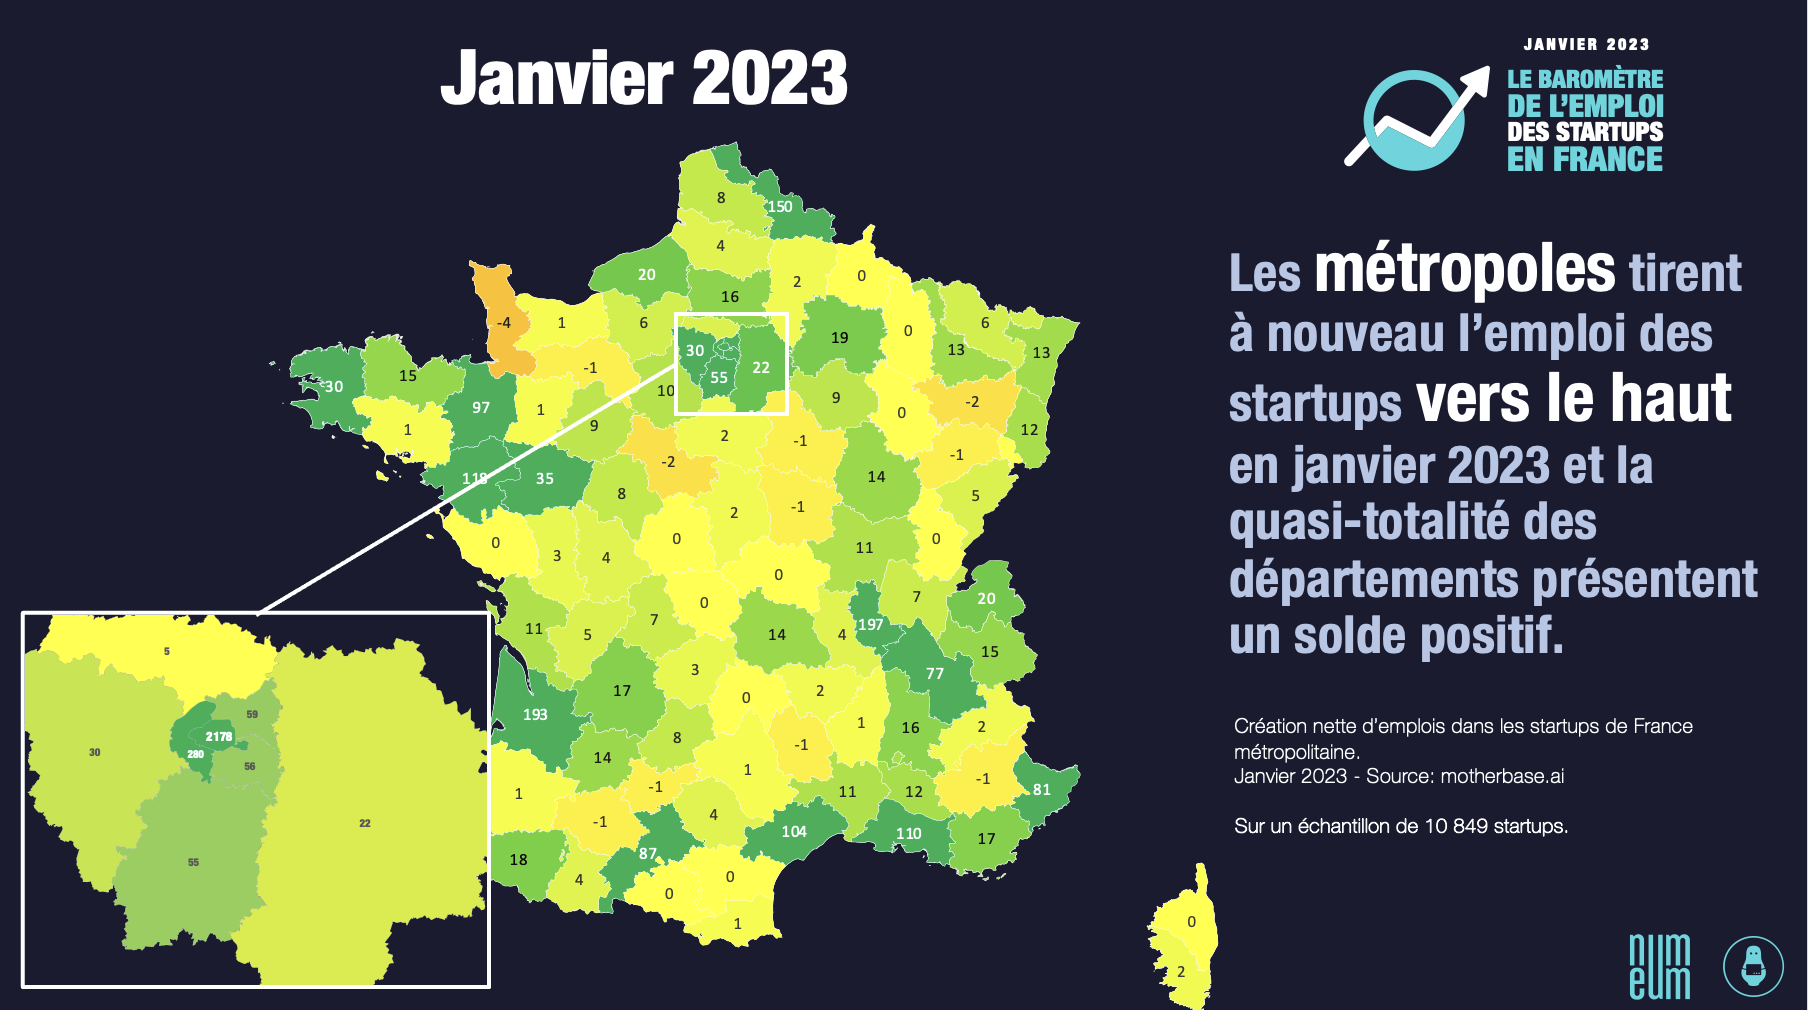 L'emploi dans les startups en France par département, janvier 23.